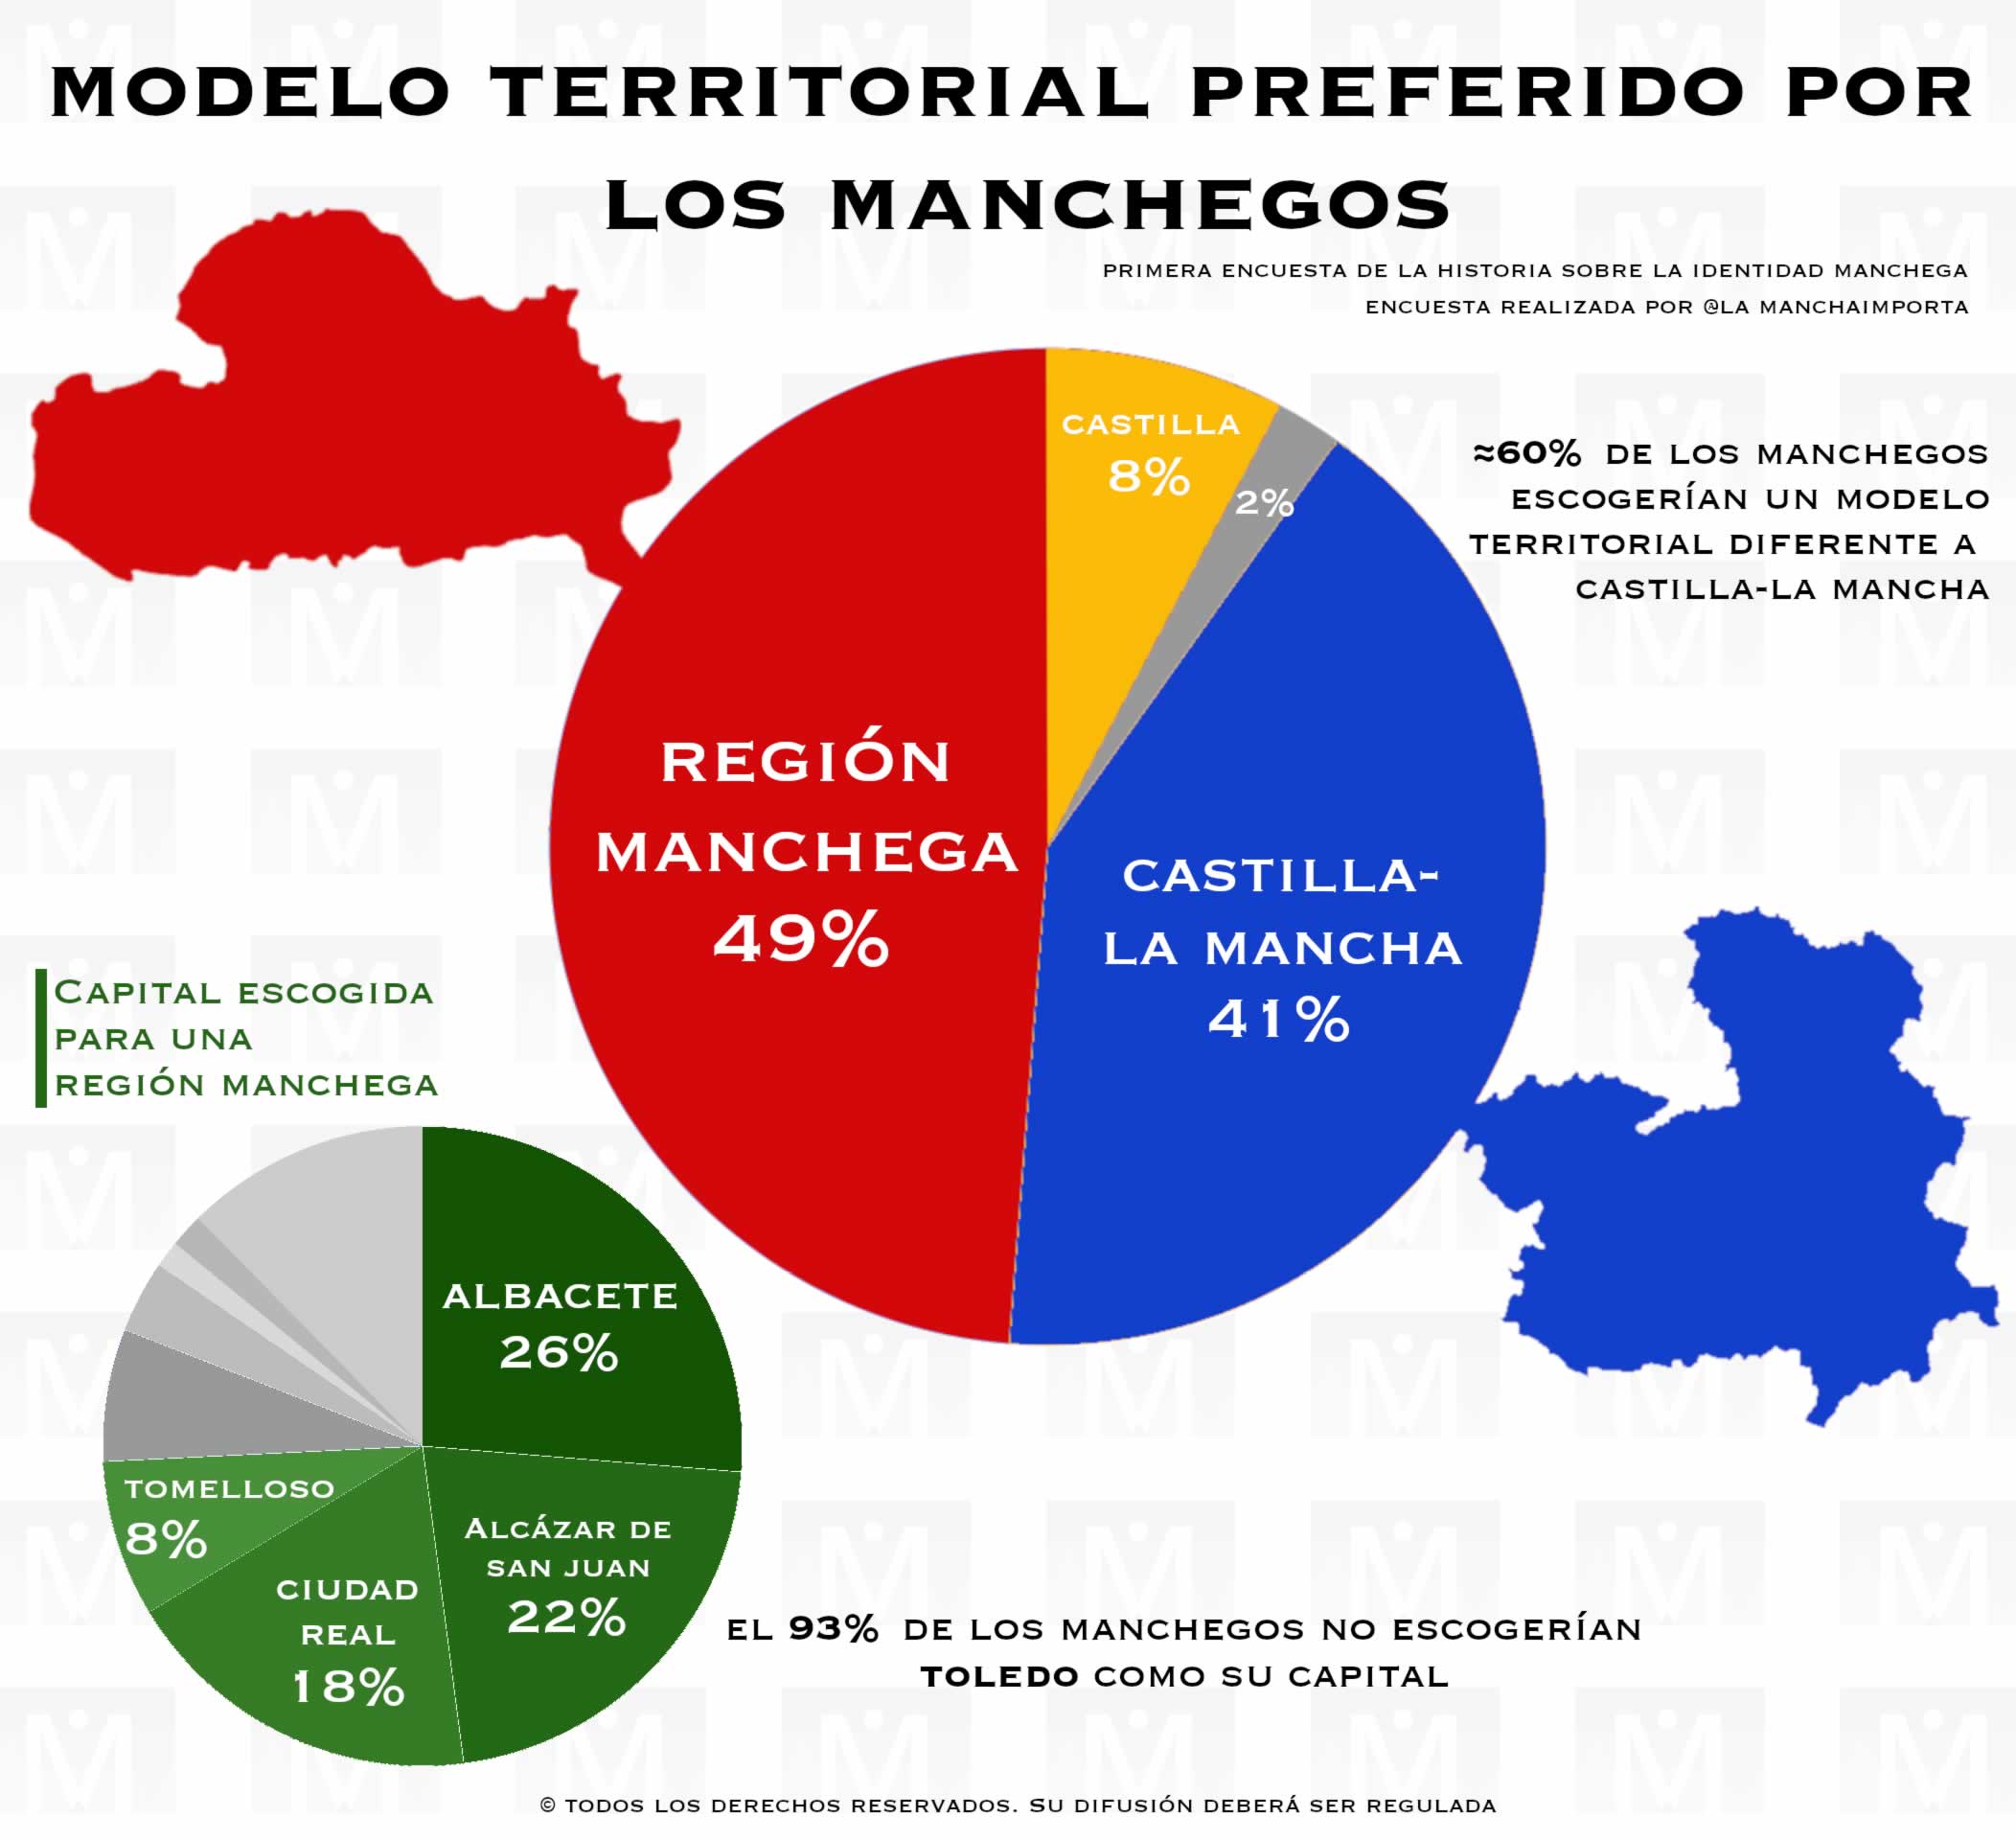 La mitad de los manchegos preferiría vivir en una Región Manchega, con Albacete como capital